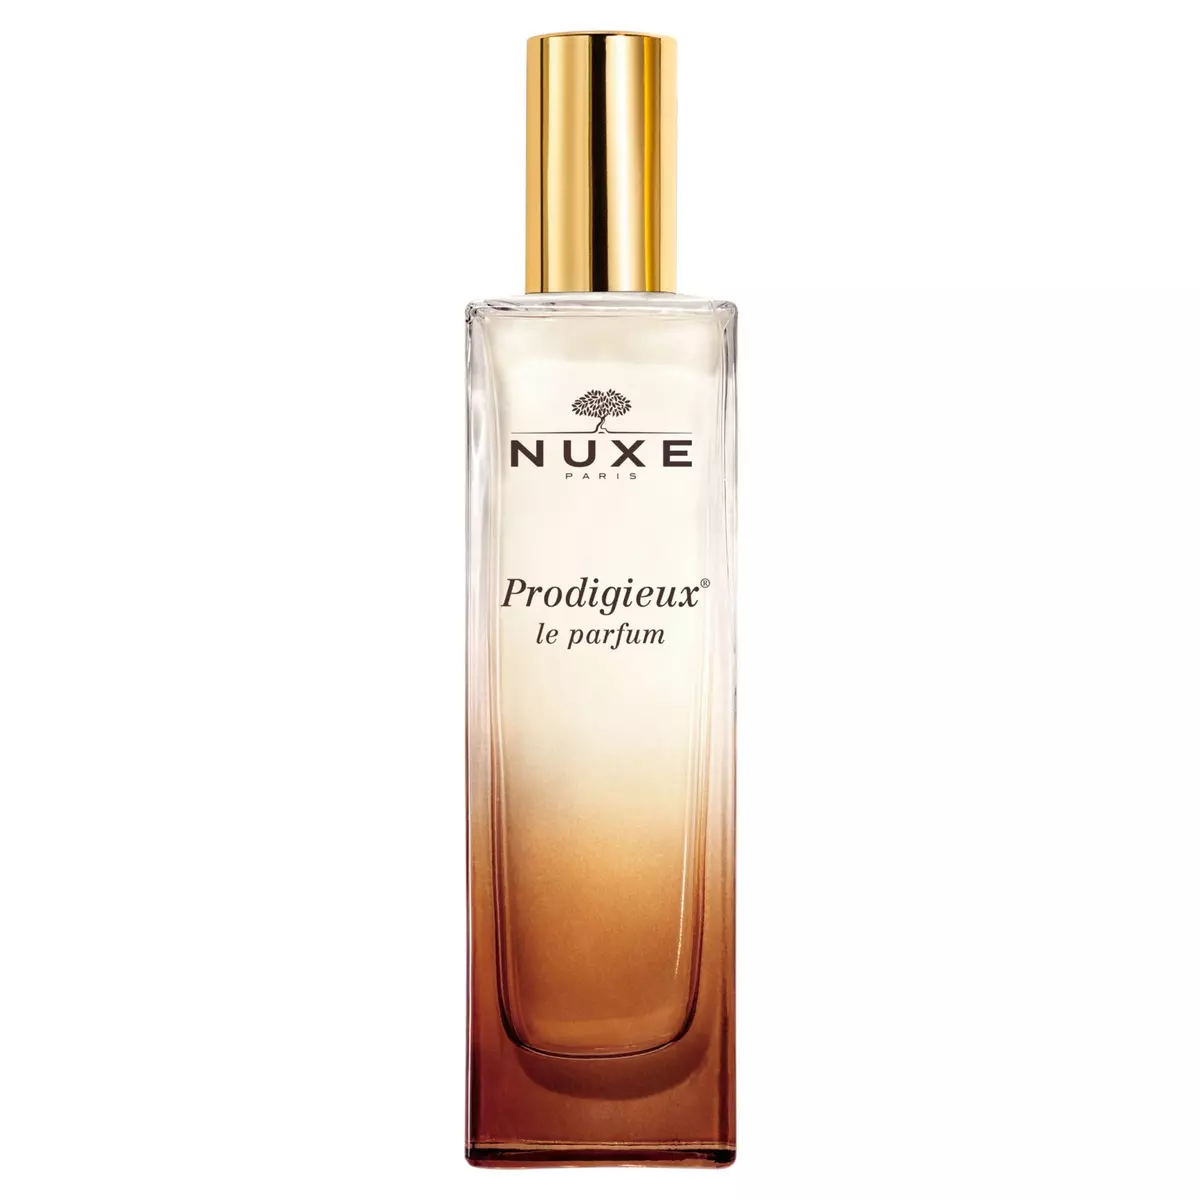 NUXE Prodigieux Le parfum 30ml